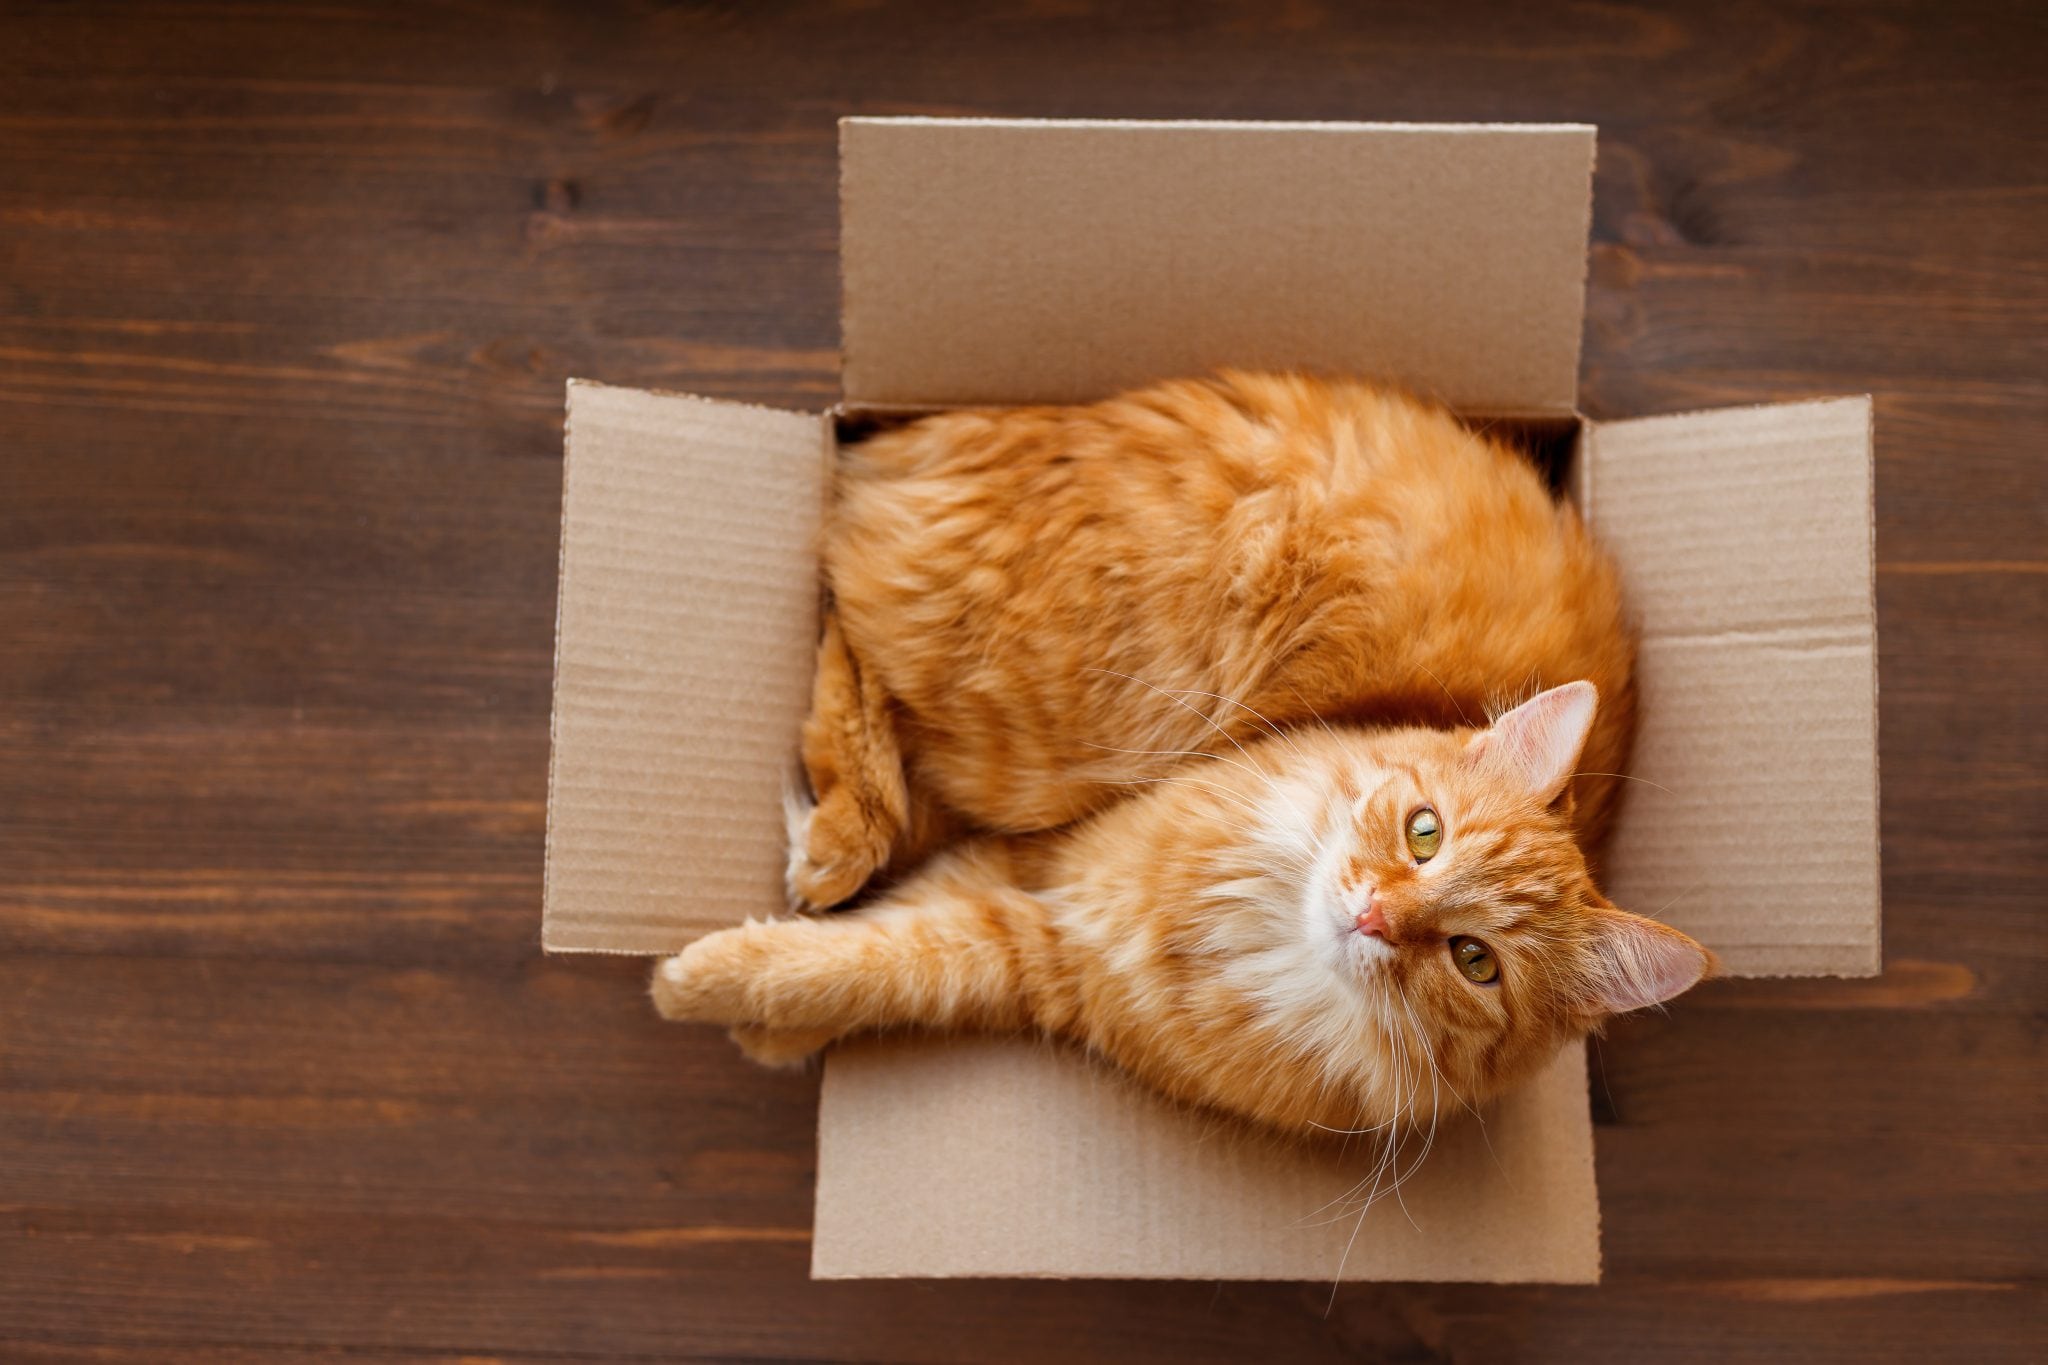 Почему кошки любят сидеть и спать в пакетах и коробках вместо домиков?